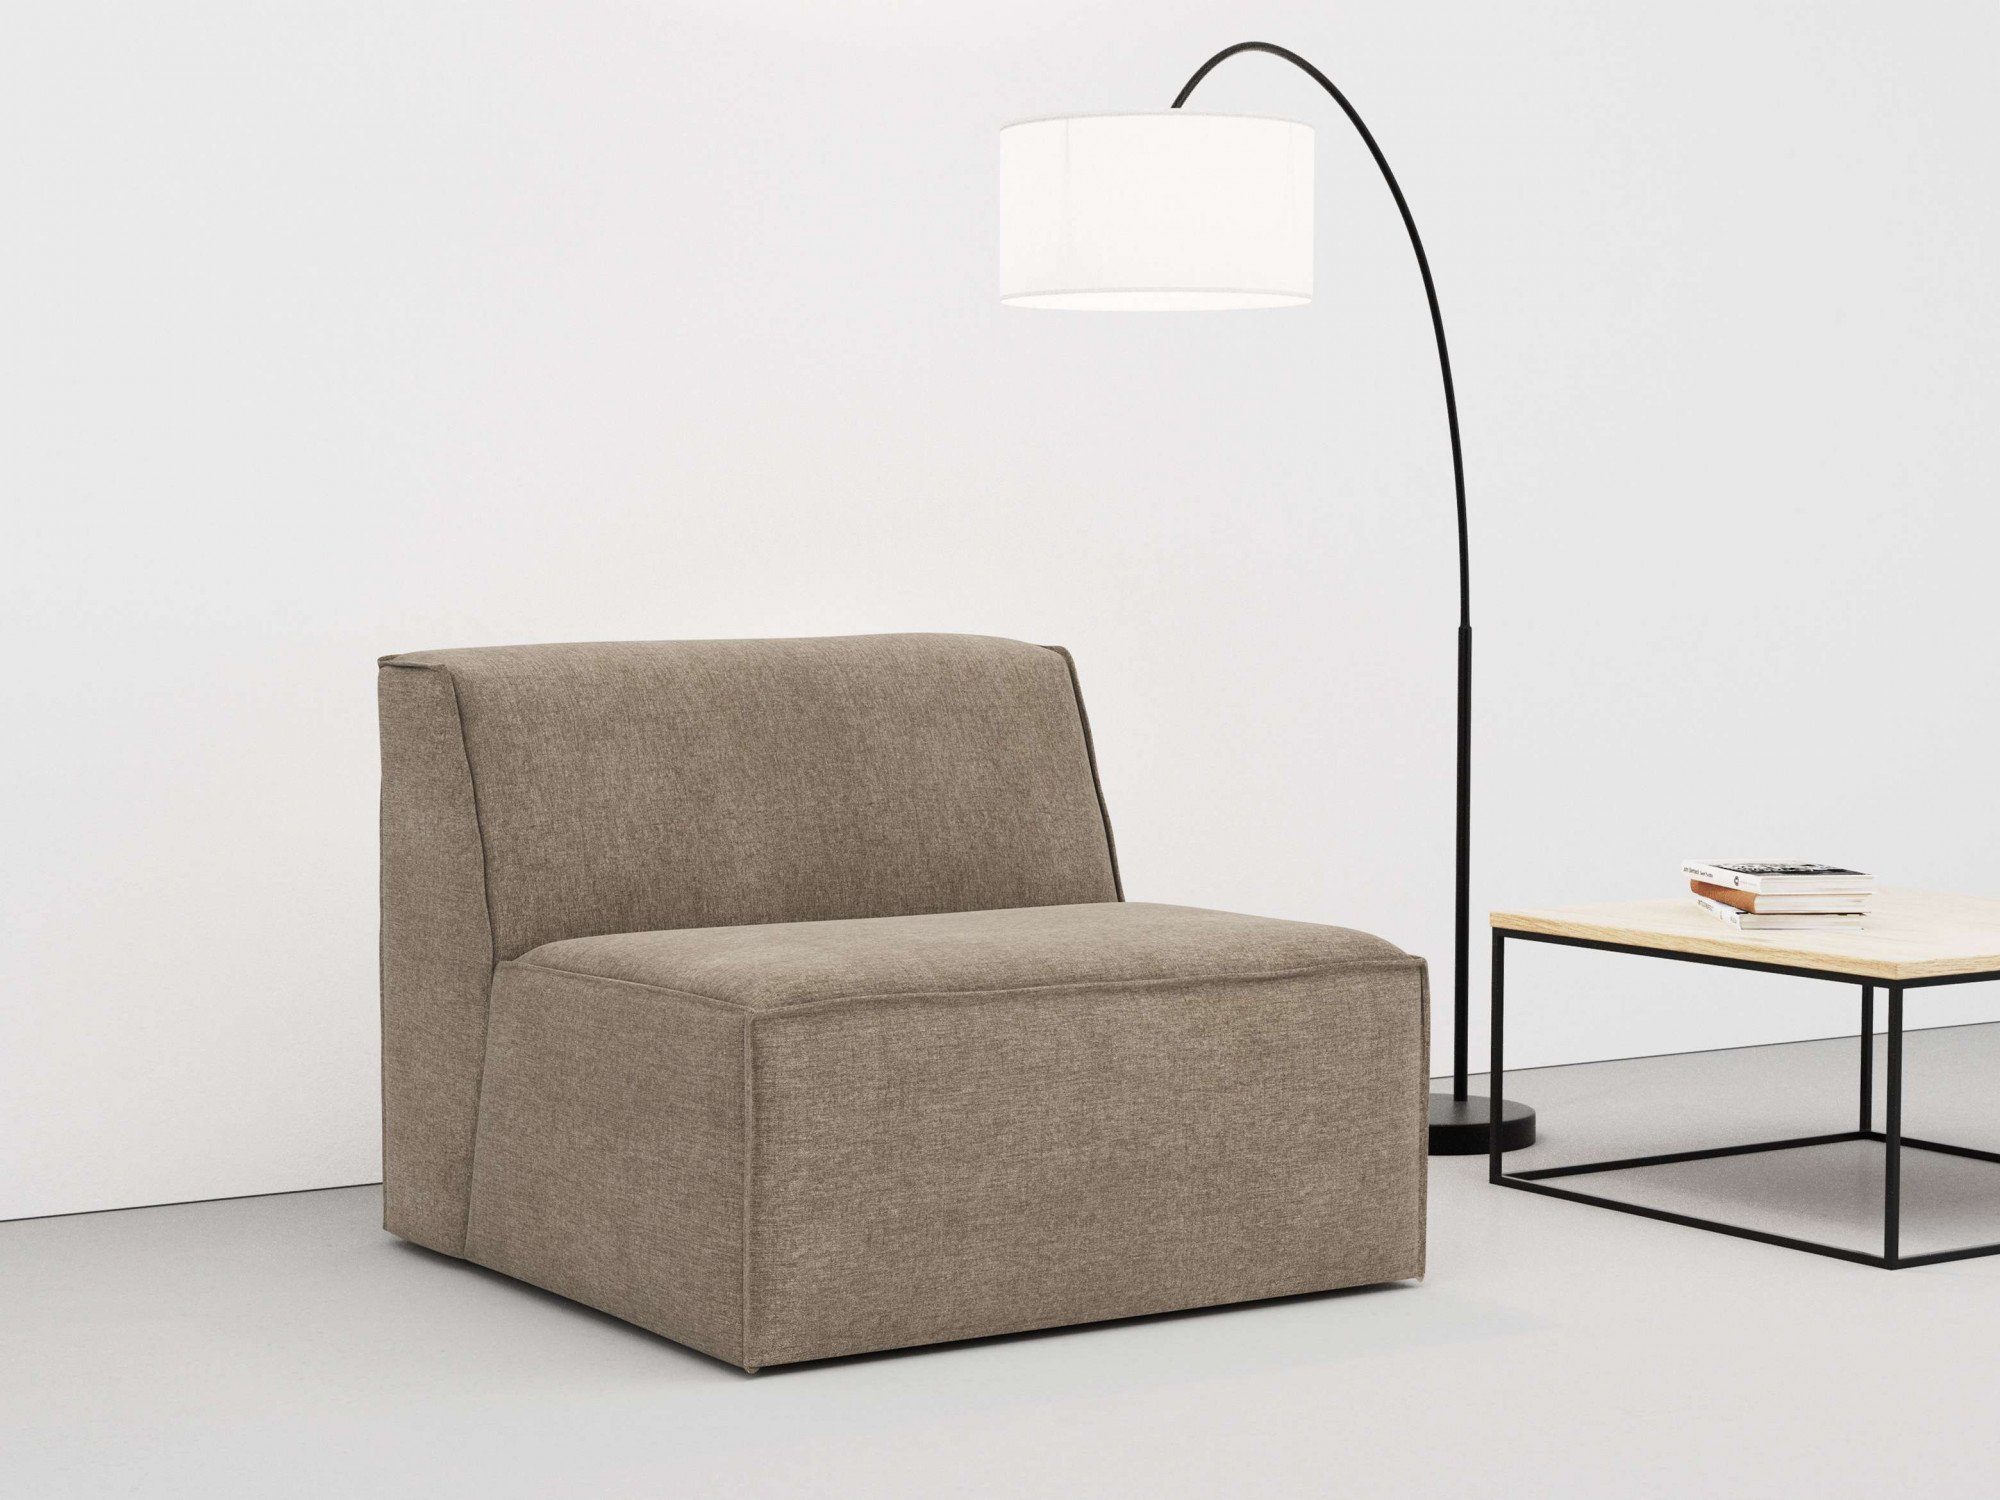 RAUM.ID Sofa-Mittelelement Norvid, modular, mit an große Polsterung und Modulen Kaltschaum, Auswahl taupe